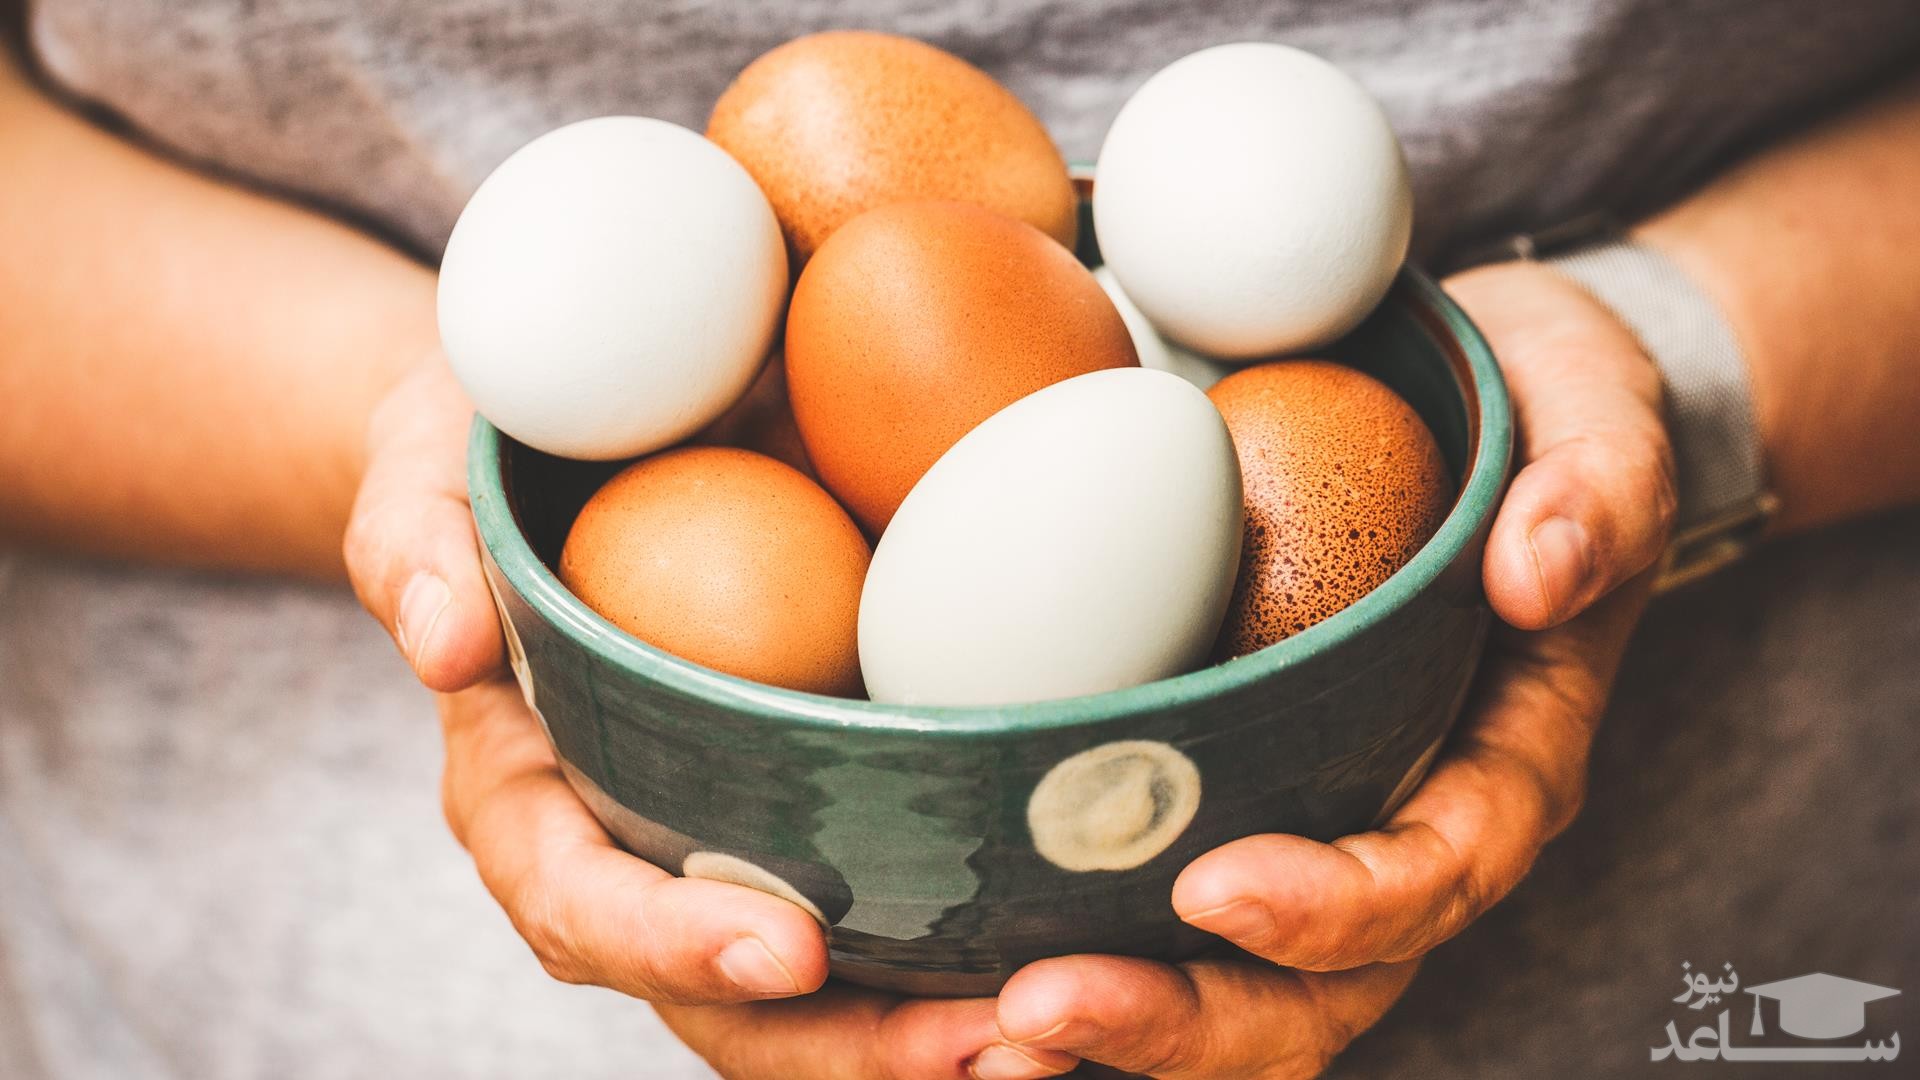 کاربرد و خواص تخم مرغ در طب سنتی